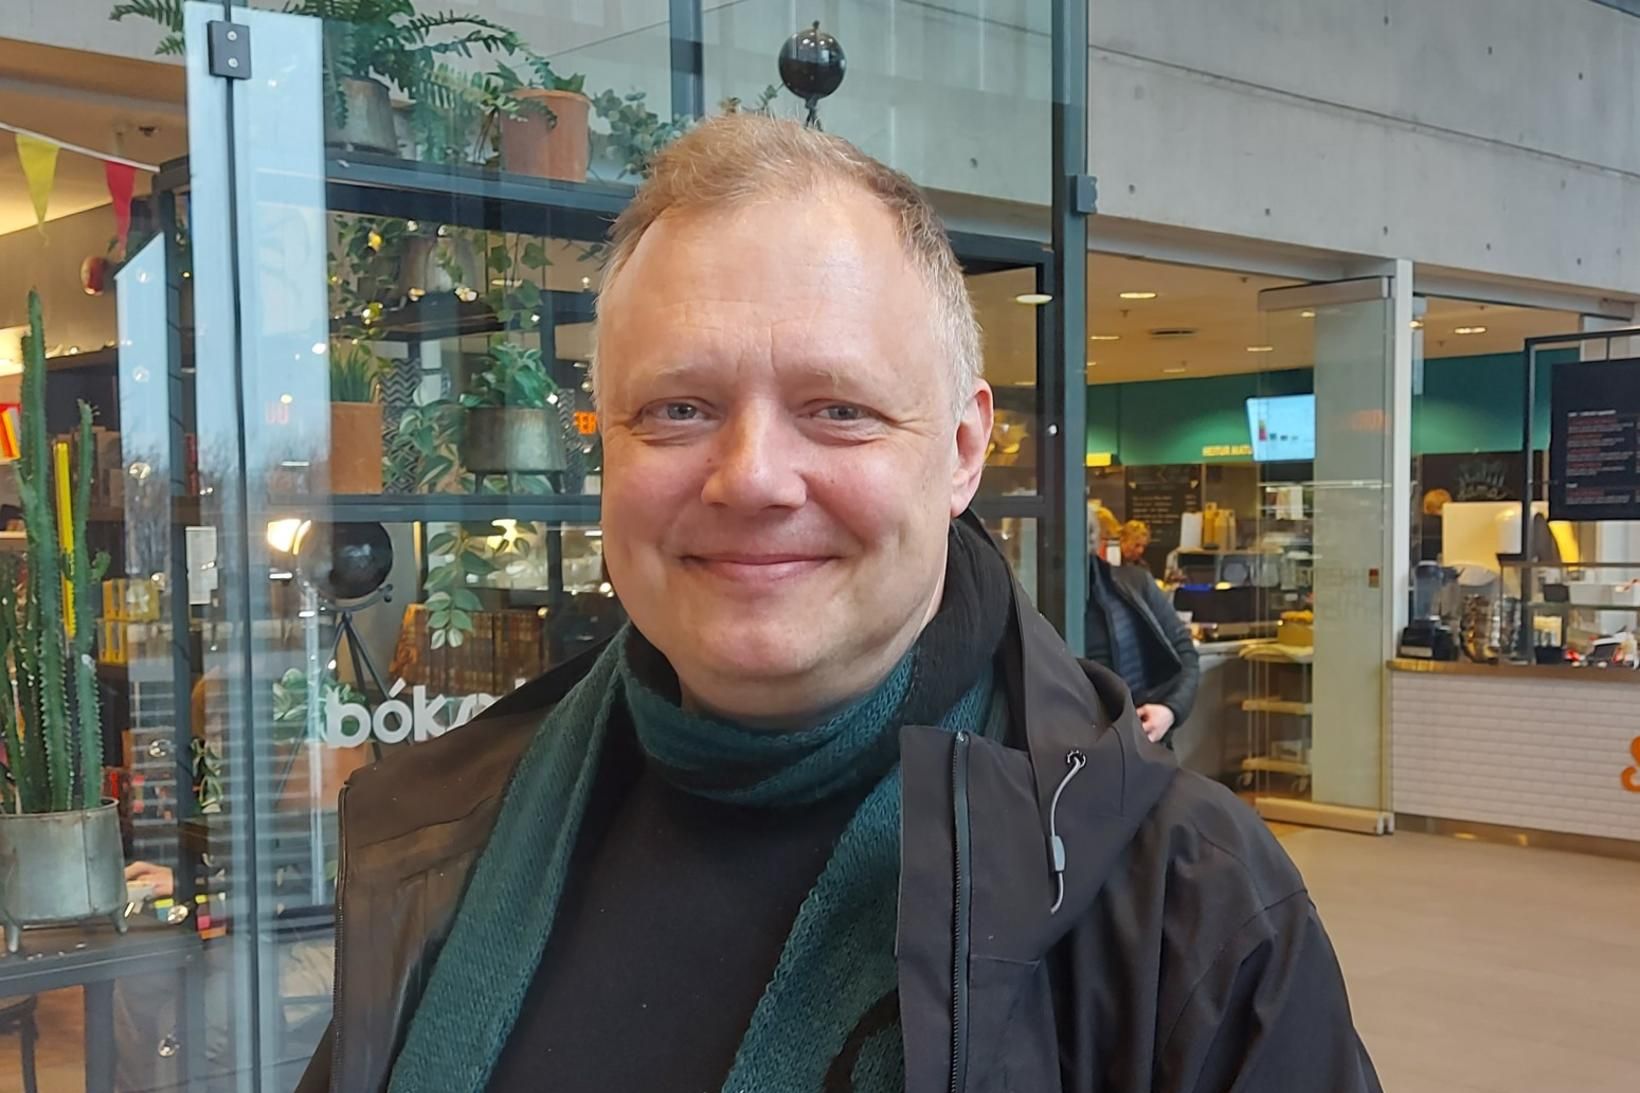 Áki Guðni Karlsson, stundakennari og doktorsnemi í þjóðfræði, var verkefnastjóri …